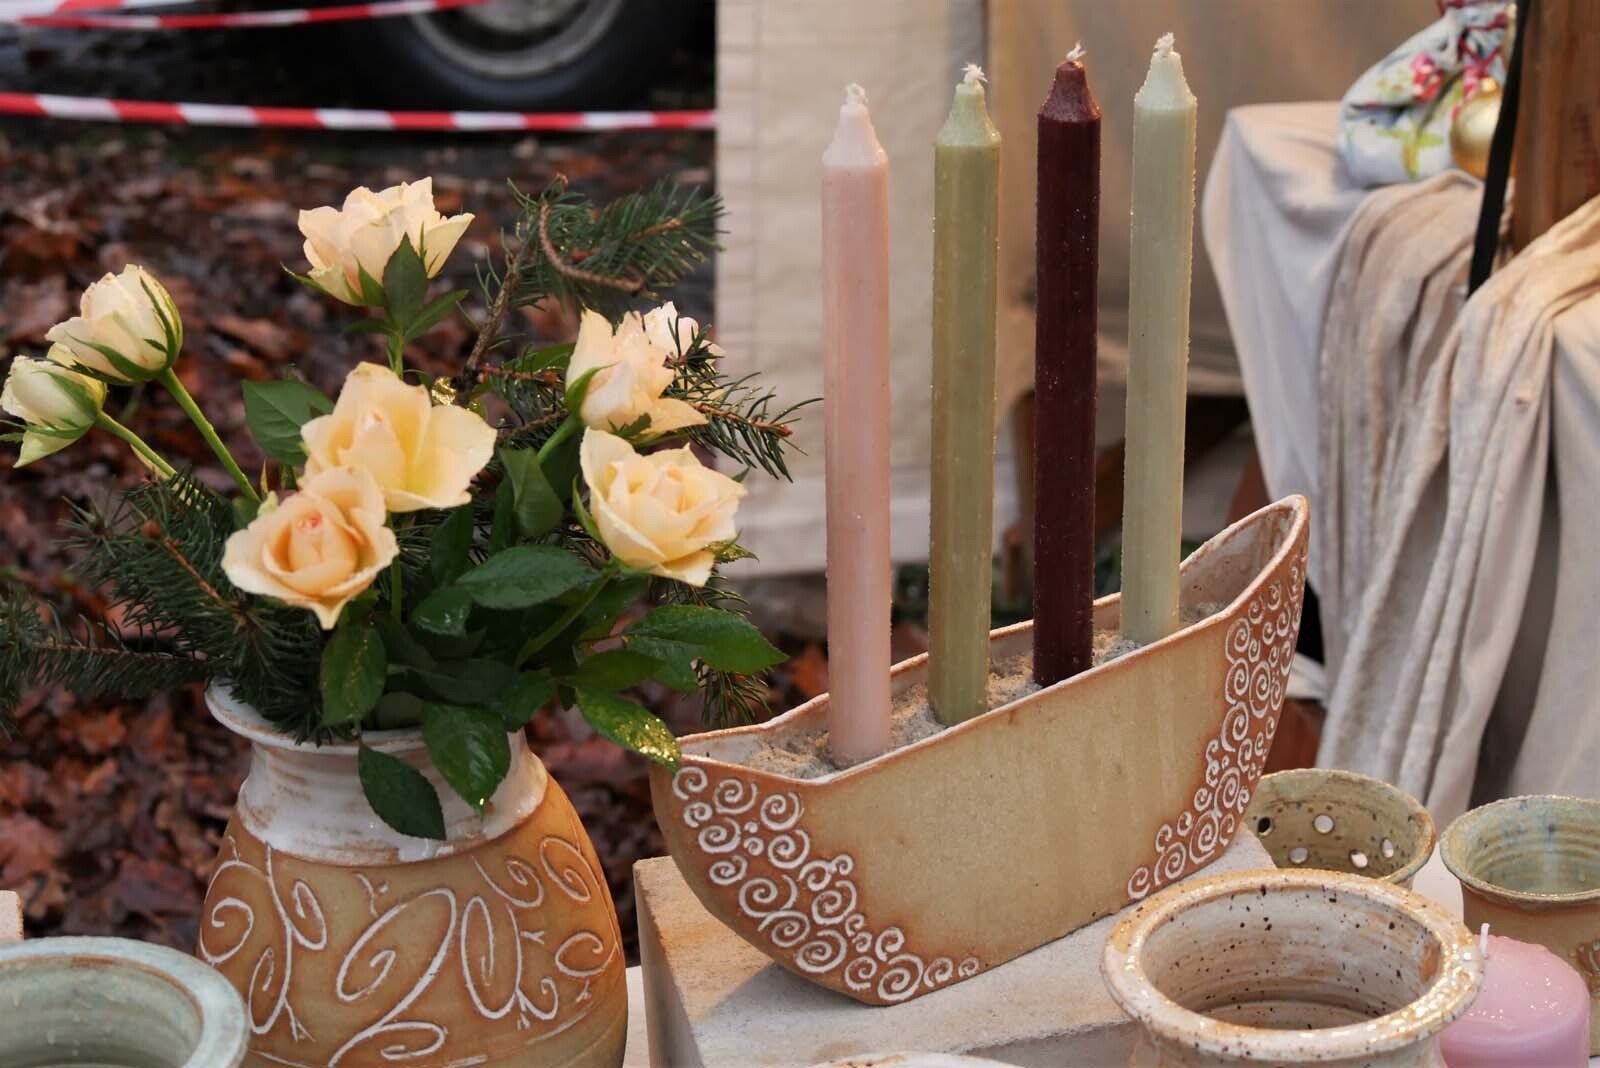 Keramikwerkstatt Schnörkelei: Keramikgeschirr und Spiegel sowie Tafeln aus Wildholz